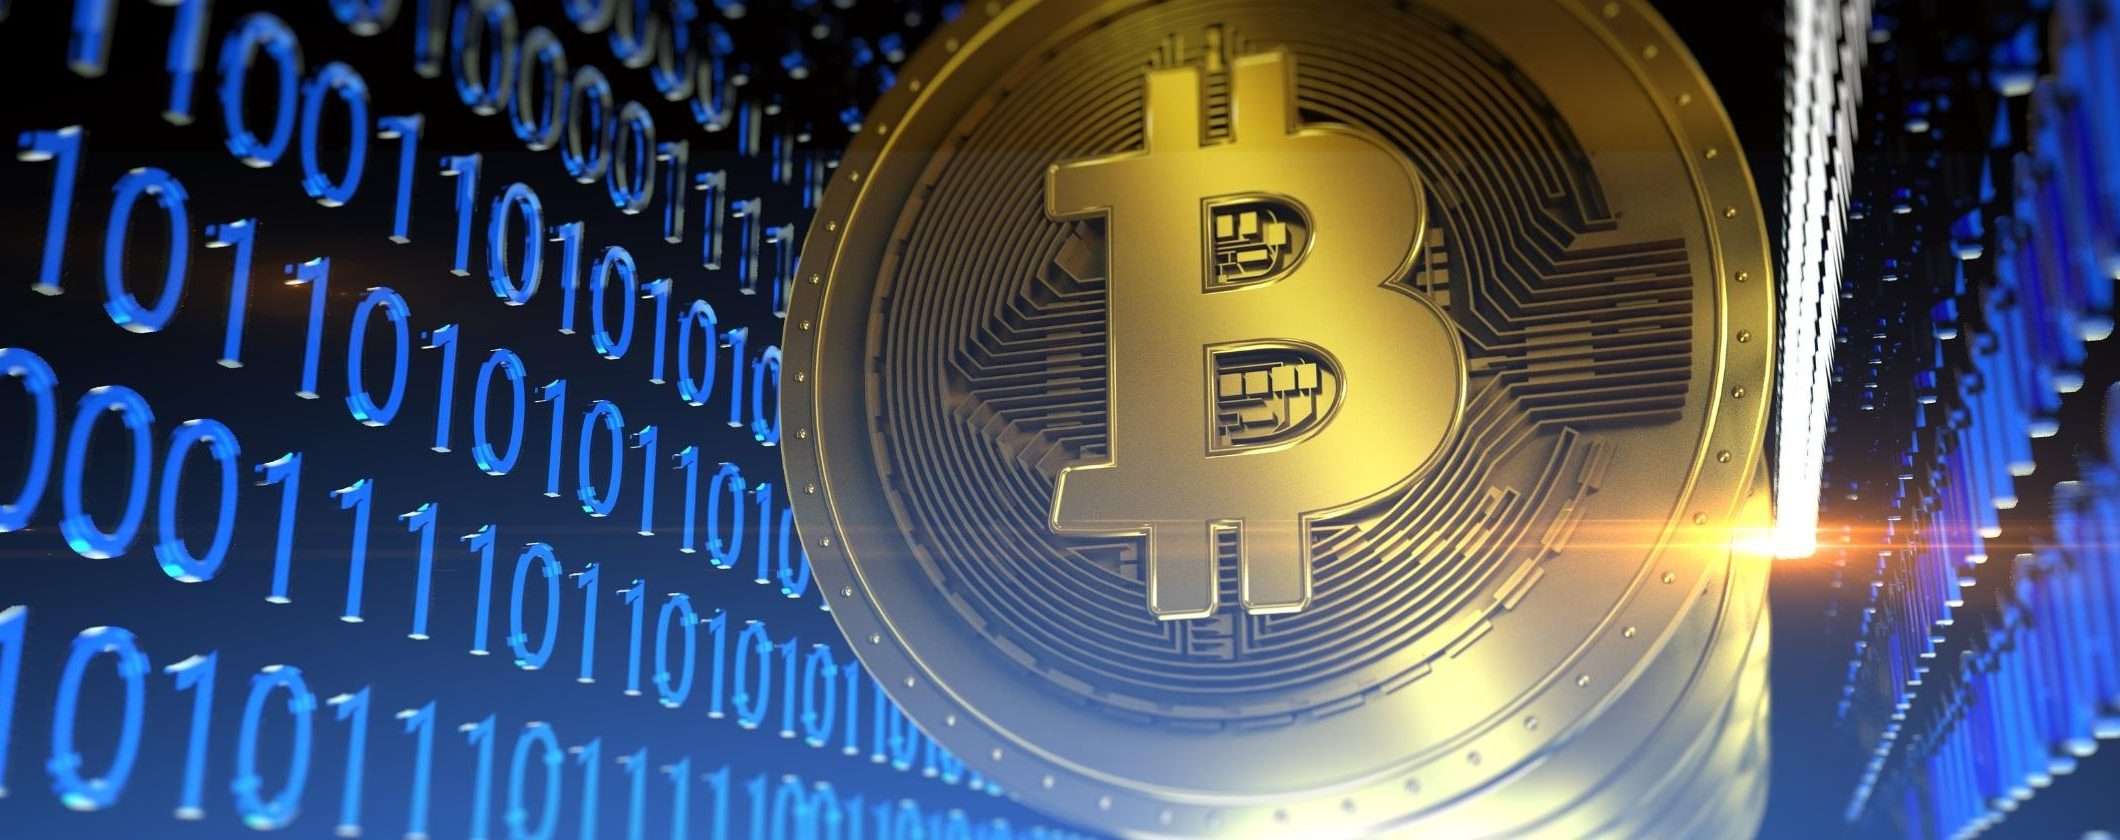 Bitcoin è un vero bene macro secondo il CEO di Galaxy Digital